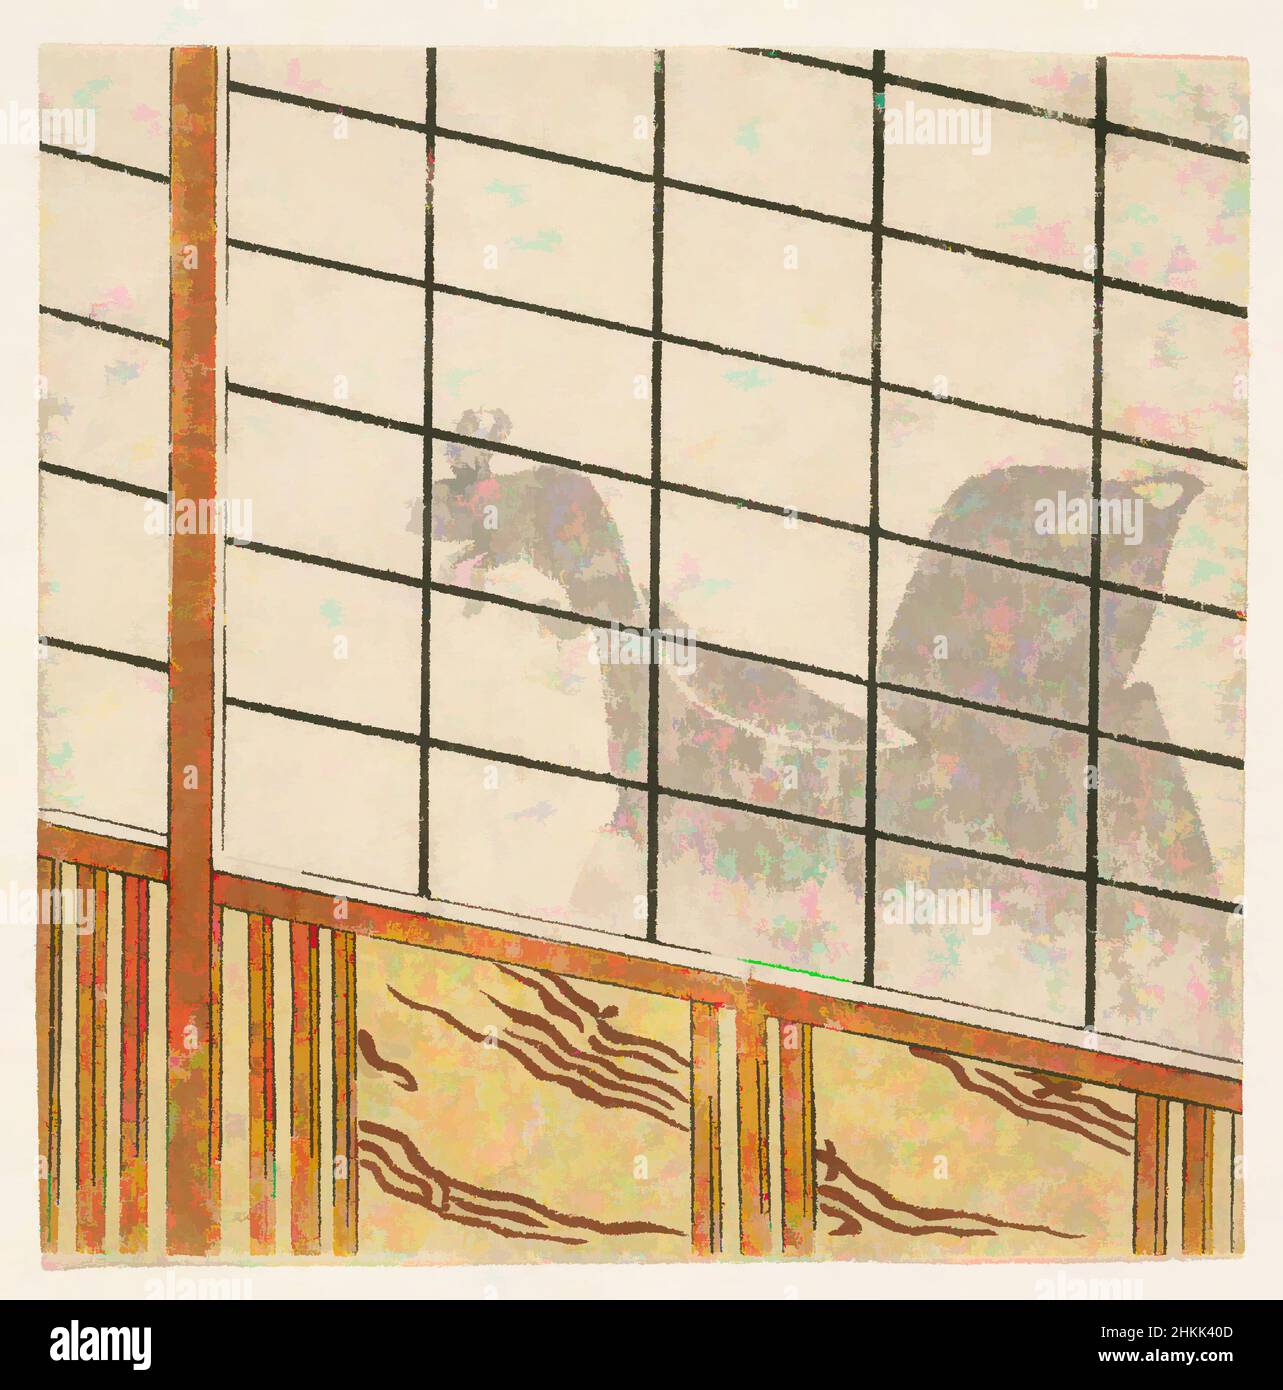 Kunst inspiriert von E-Goyomi, Schatten des Menschen auf Shoji, Farbholzschnitt auf Papier, Japan, 1782-1785, Edo-Zeit, Tenmei III-Ära, 4 11/16 x 4 3/4 Zoll, 11,9 x 12 cm, Classic Works modernisiert von Artotop mit einem Schuss Moderne. Formen, Farbe und Wert, auffällige visuelle Wirkung auf Kunst. Emotionen durch Freiheit von Kunstwerken auf zeitgemäße Weise. Eine zeitlose Botschaft, die eine wild kreative neue Richtung verfolgt. Künstler, die sich dem digitalen Medium zuwenden und die Artotop NFT erschaffen Stockfoto